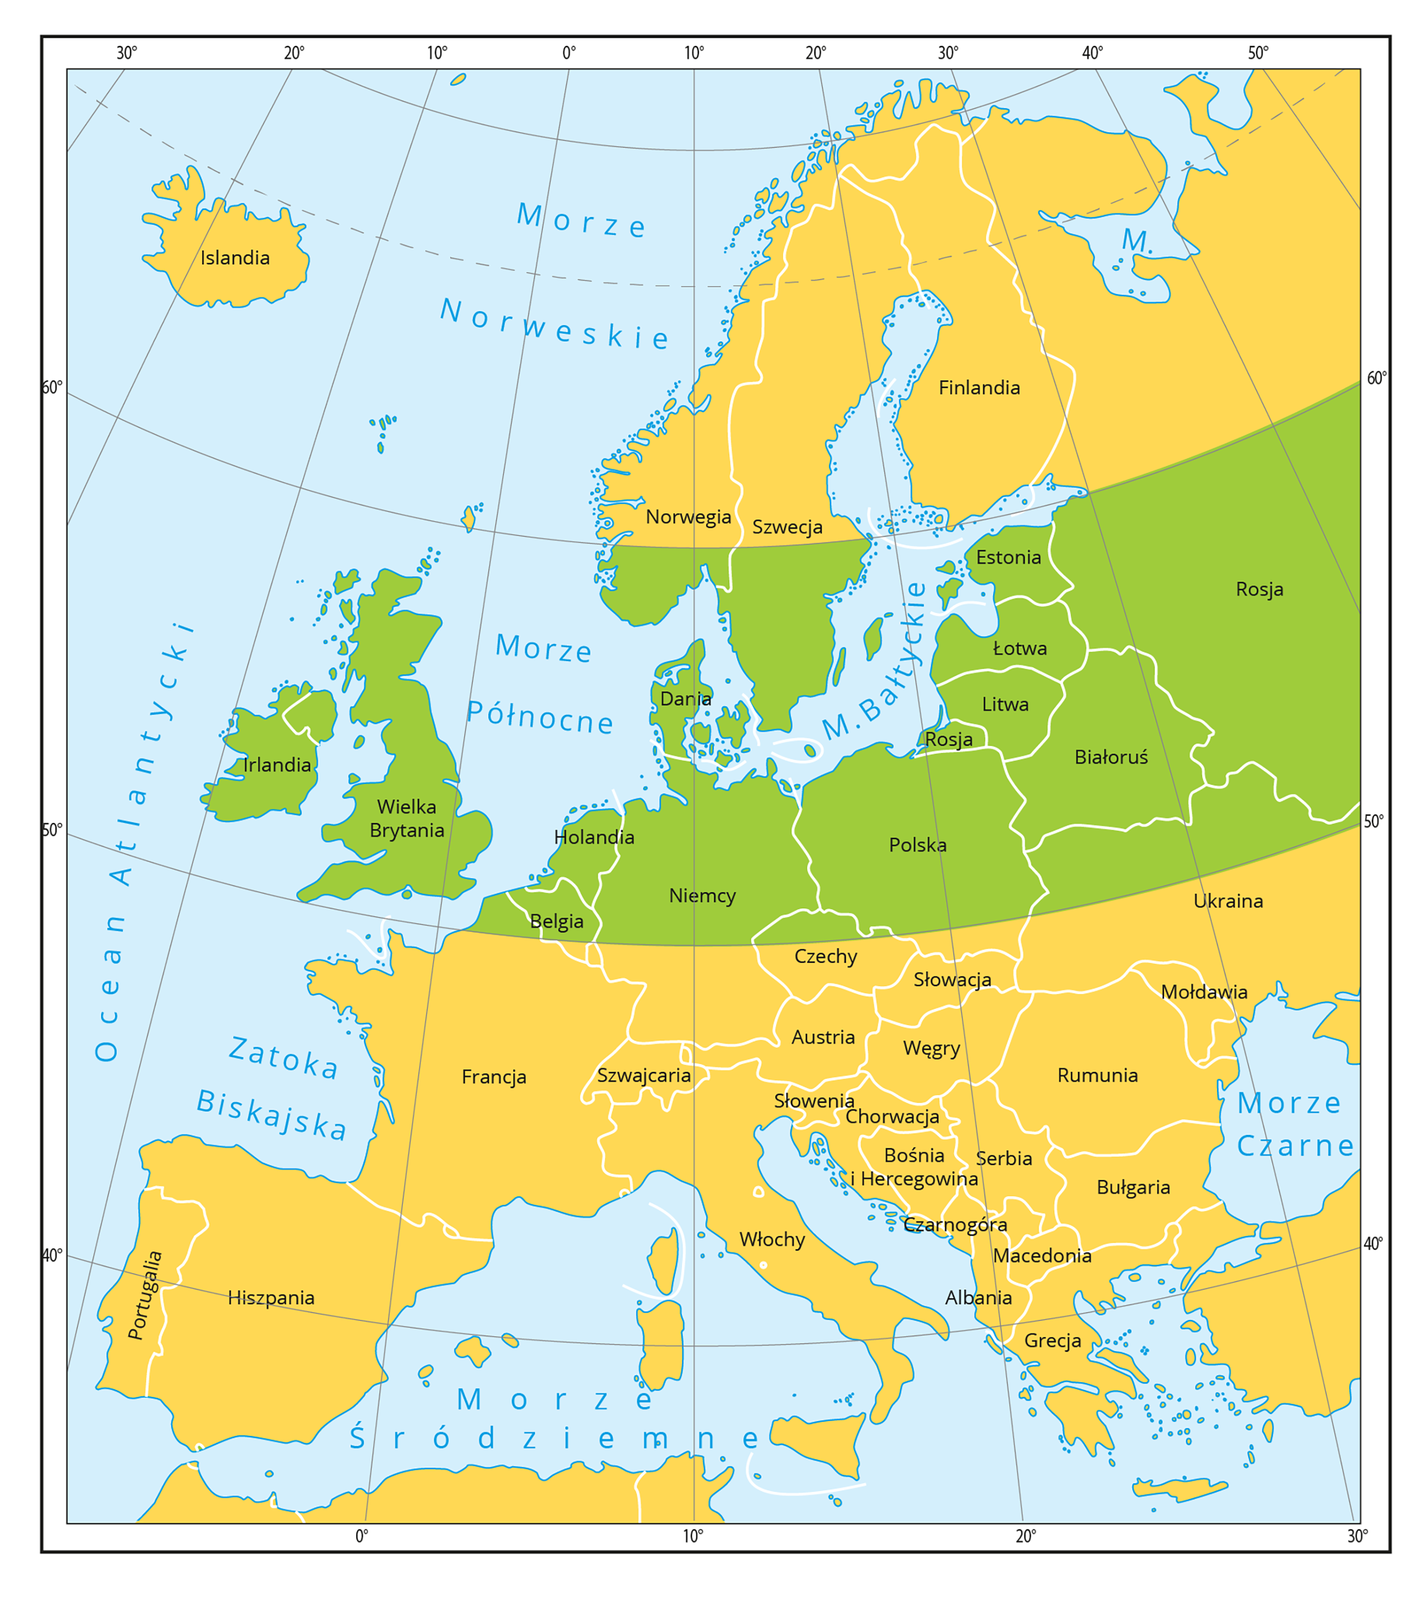 Ilustracja przedstawia mapę Europy w Kolorzach: pomarańczowym i zielonym. Zielony oznacza strefę korzystną do uprawy ziemniaka.